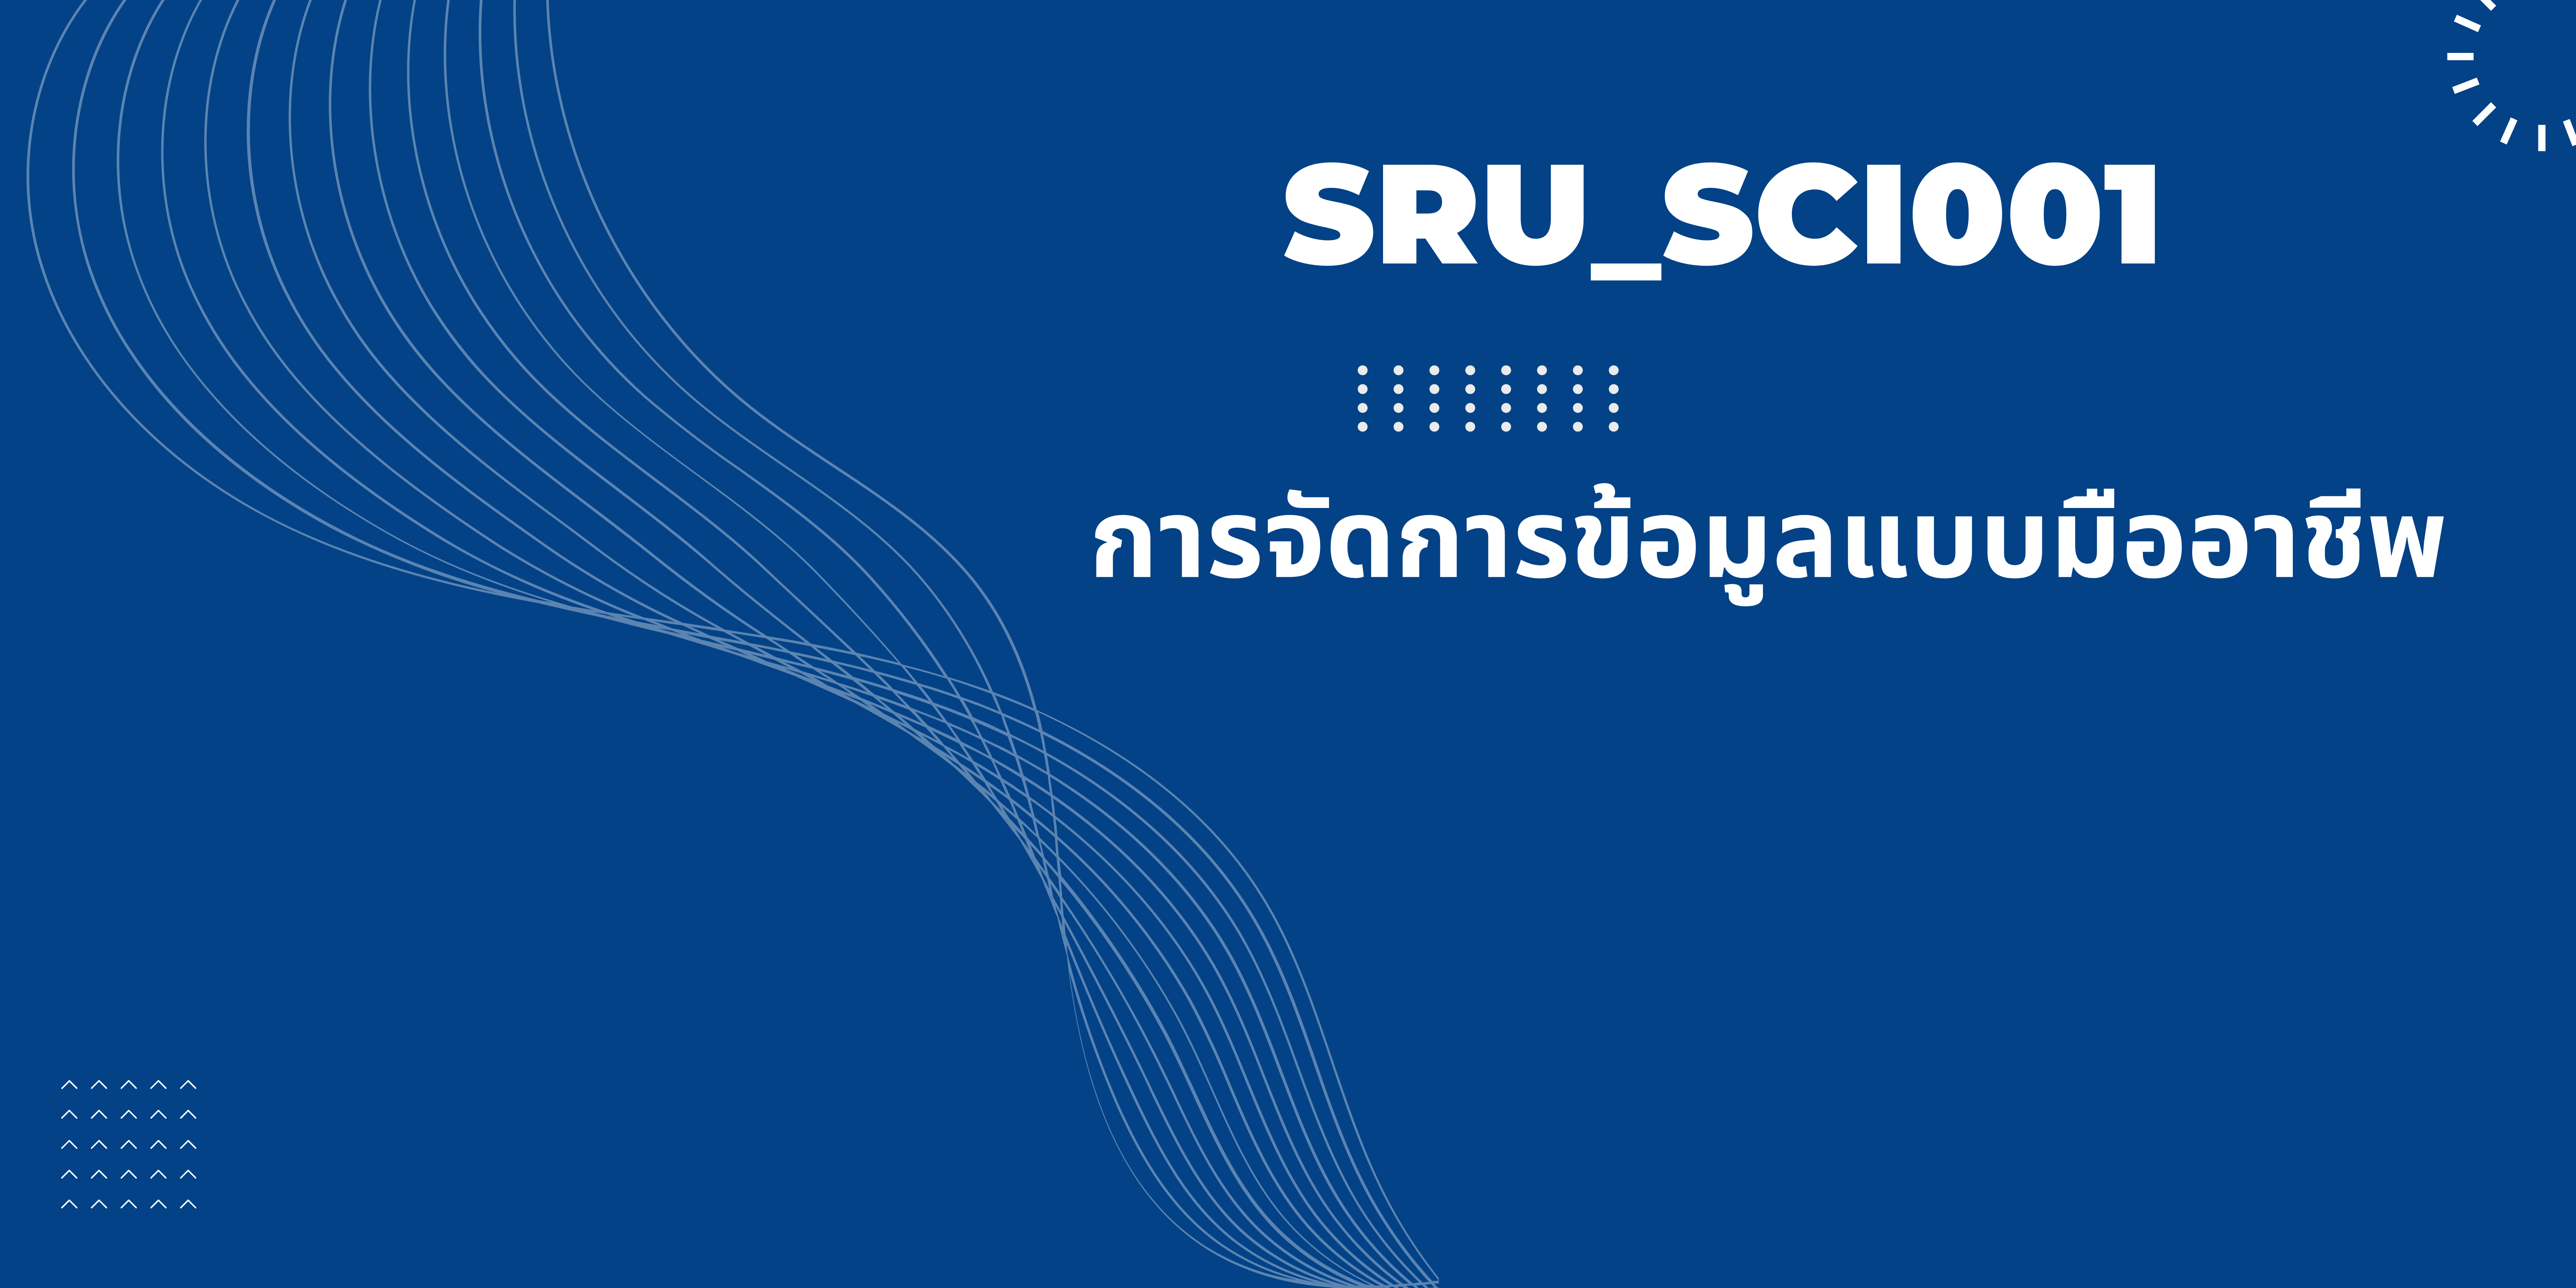 การจัดการข้อมูลแบบมืออาชีพ SRU_SCI001